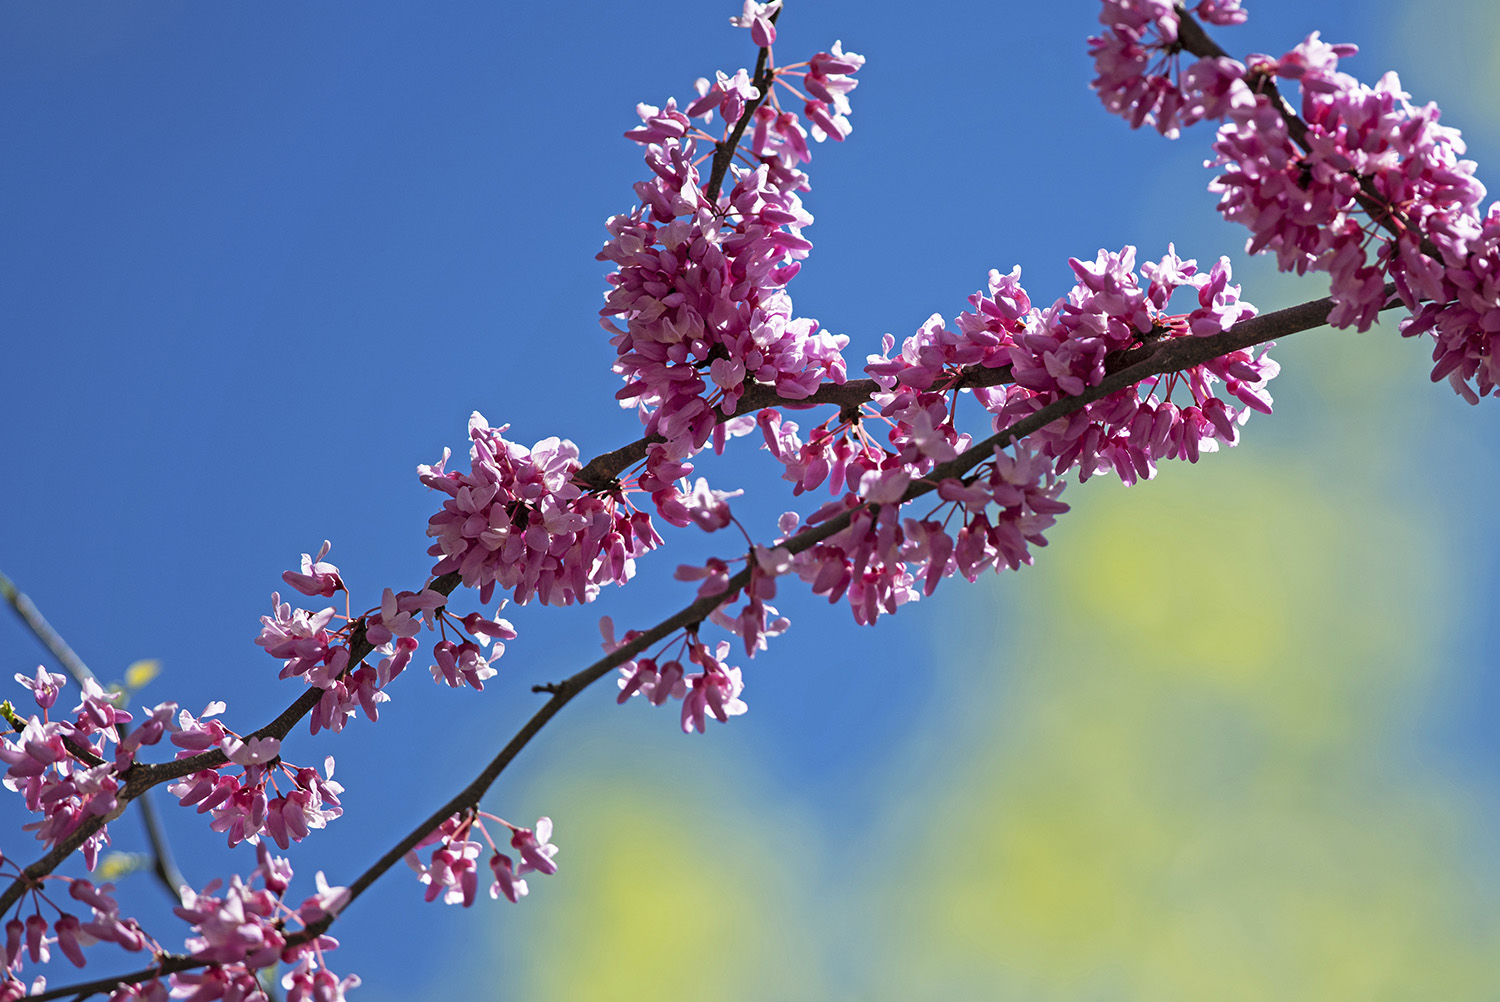 Redbud_Pink_Blossoms_Blue_Sky_Springtime_Colorful.jpg